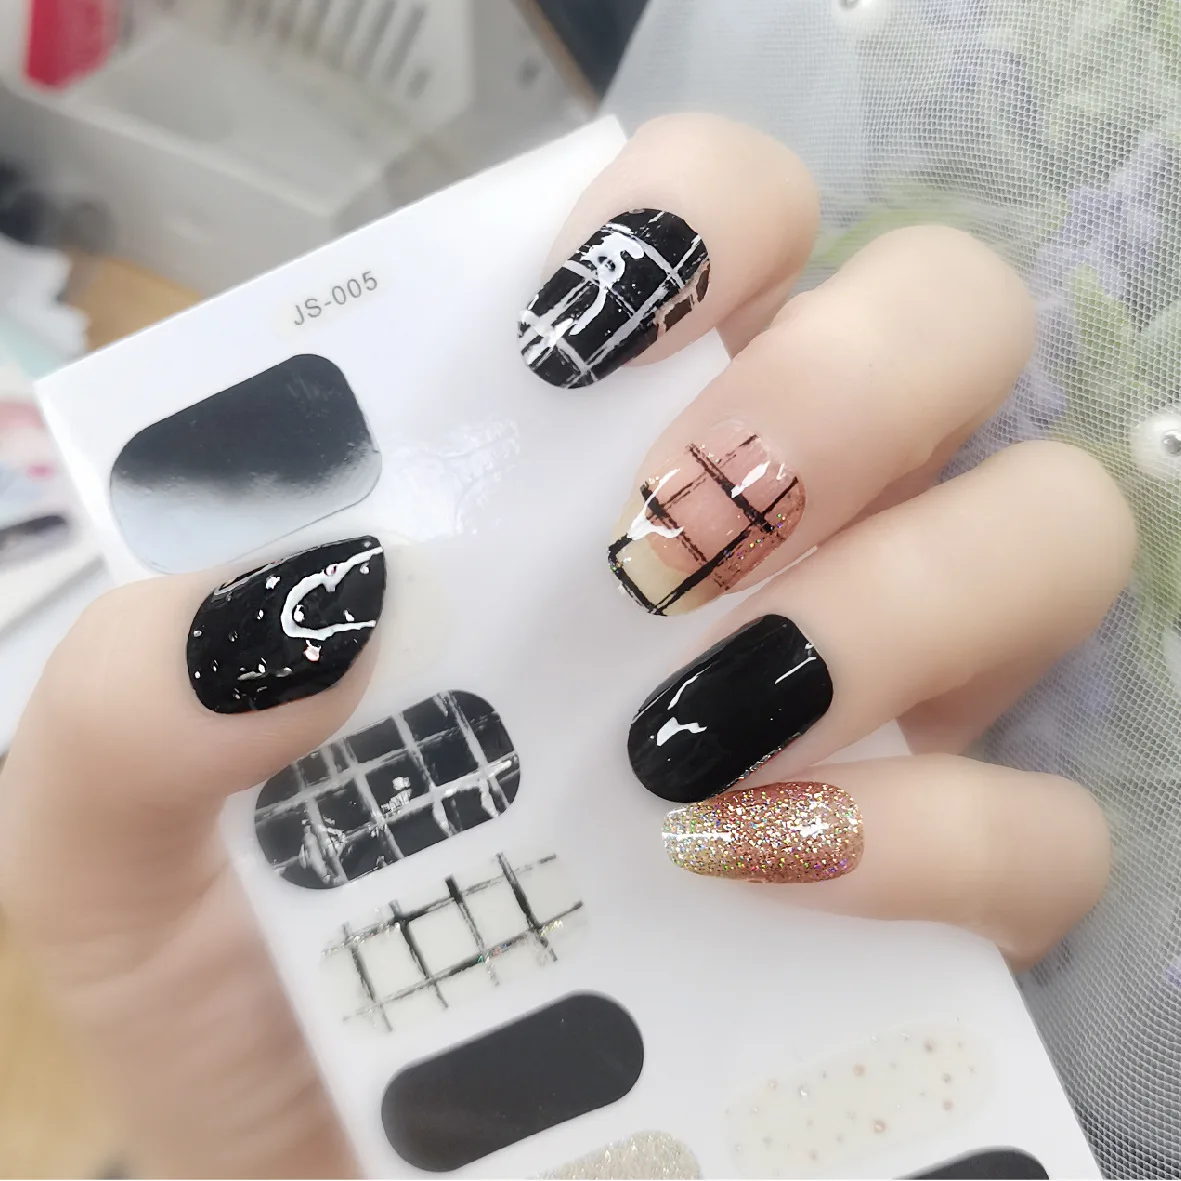 Designer nails. Sculpted fiber gel black & gold nails.Chanel